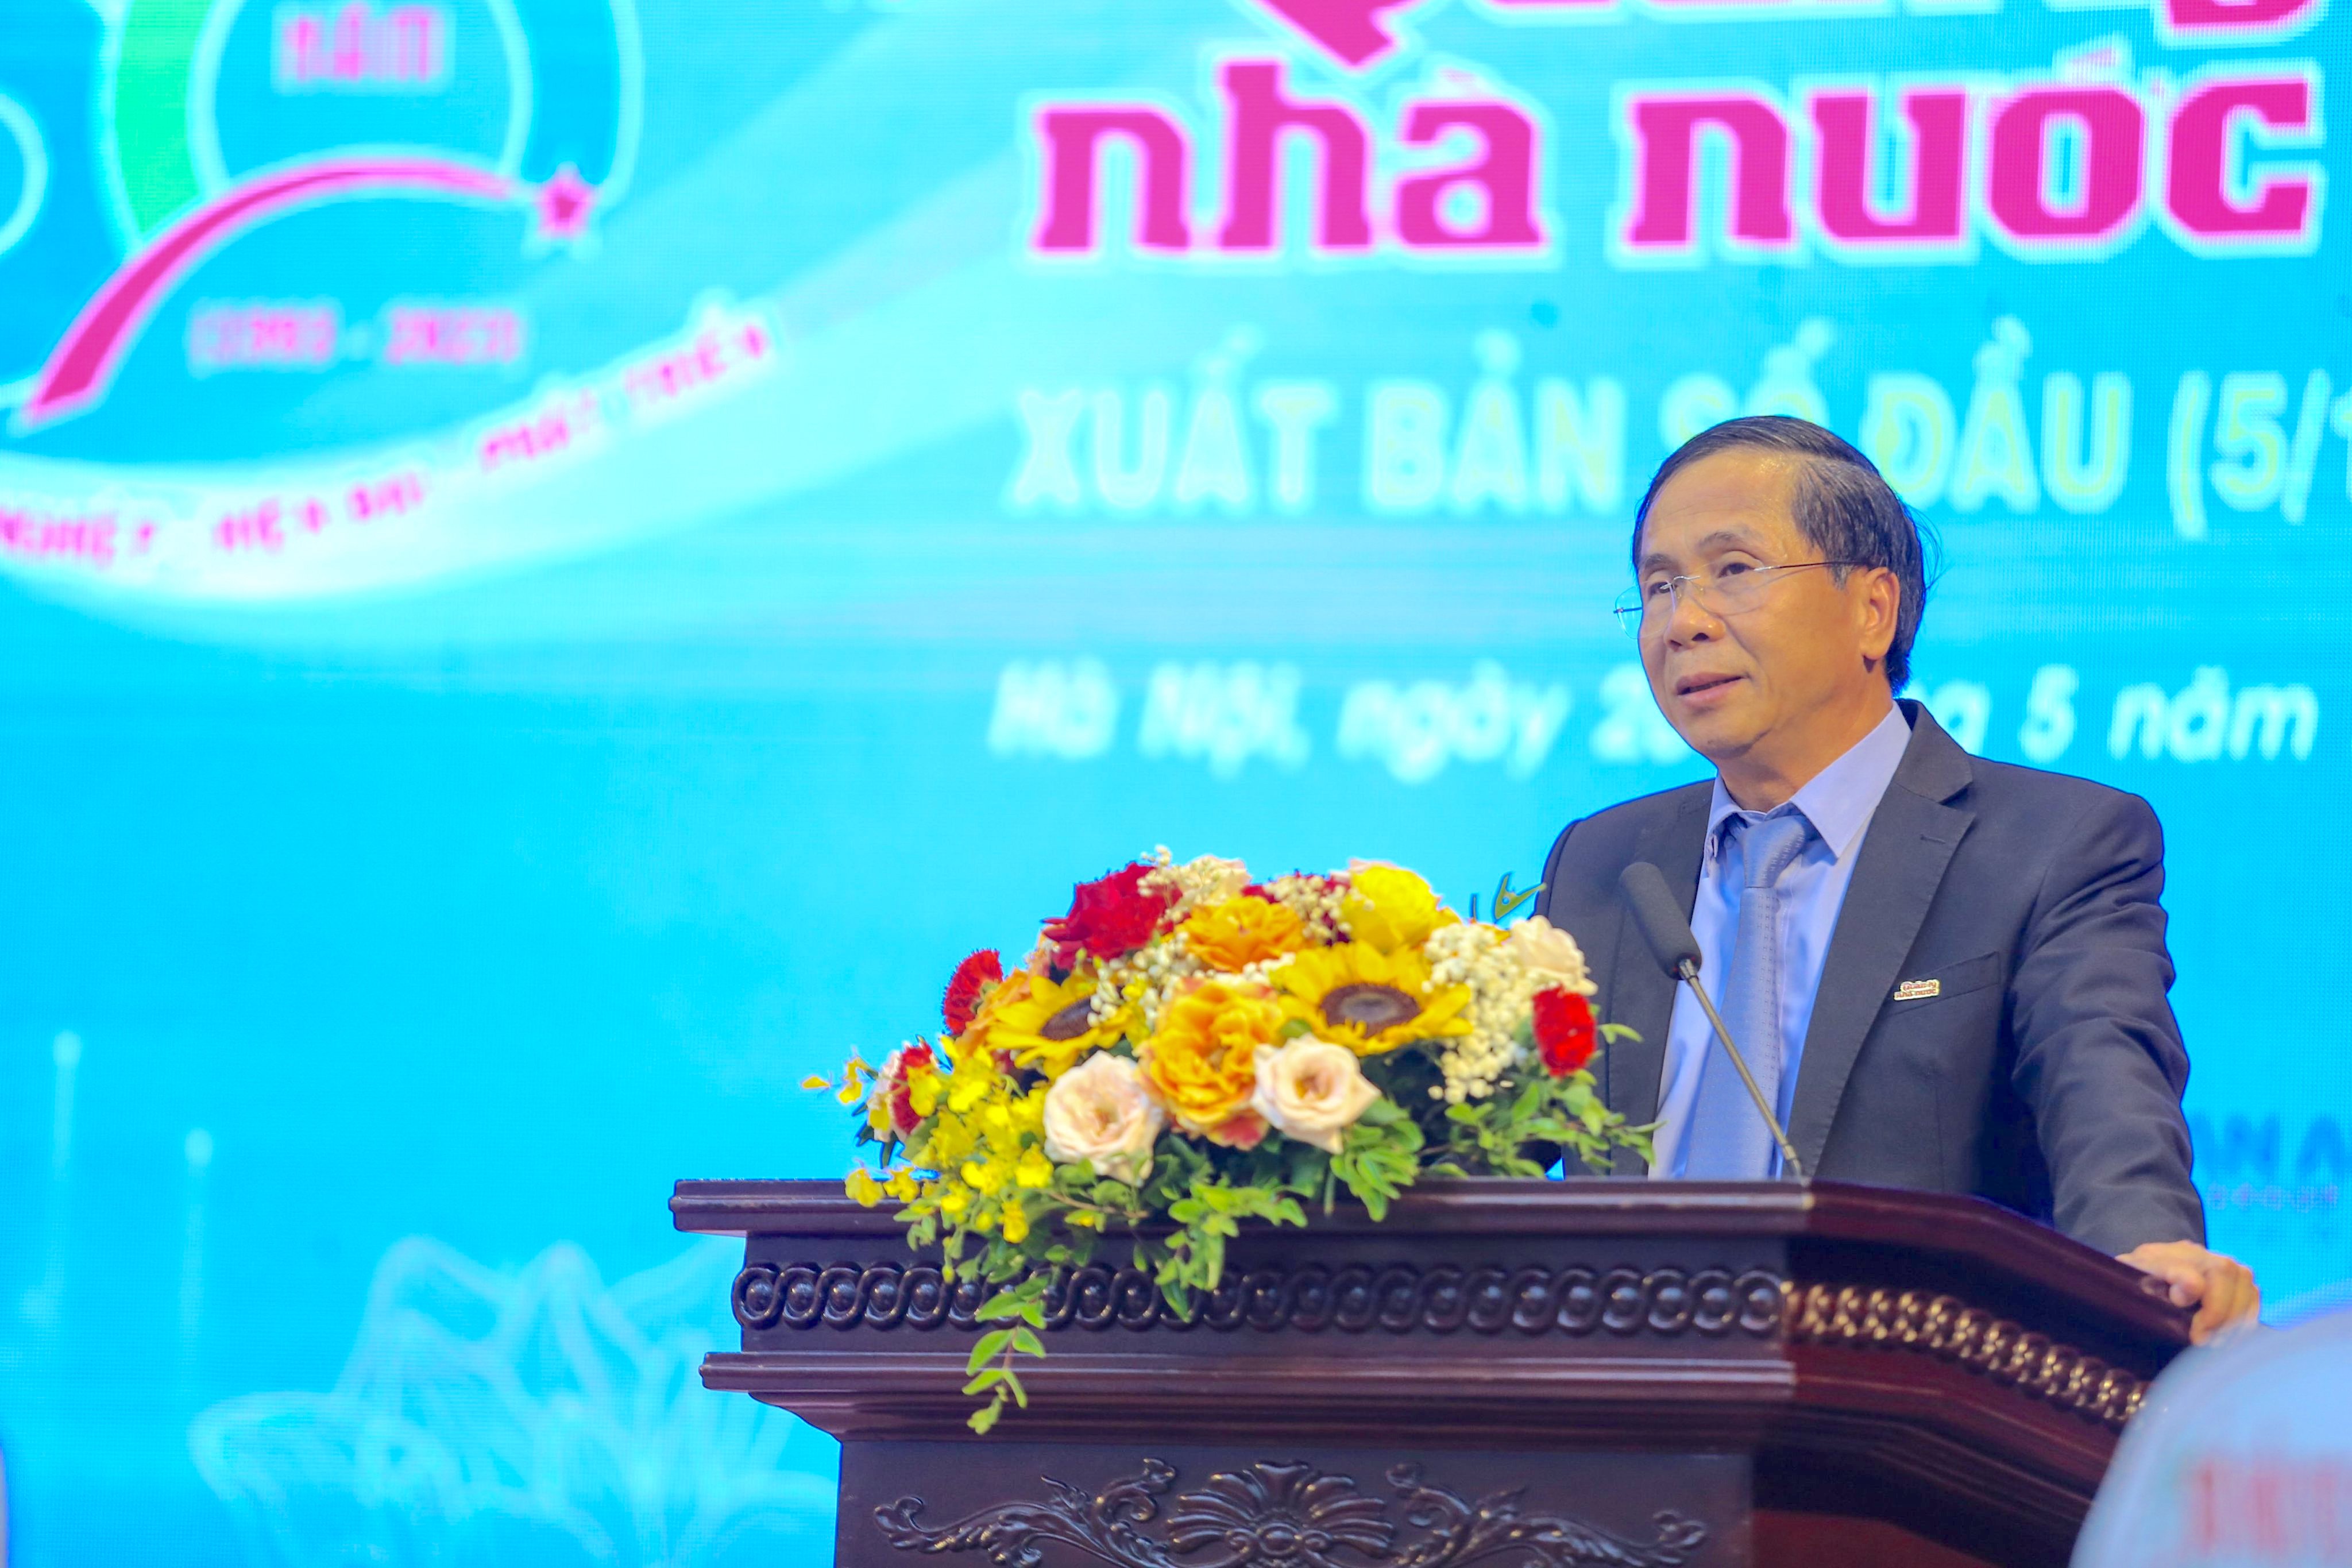 Đồng chí Triệu Văn Cường, Ủy viên Ban Cán sự Đảng, Thứ trưởng Bộ Nội vụ phát biểu tại buổi lễ.